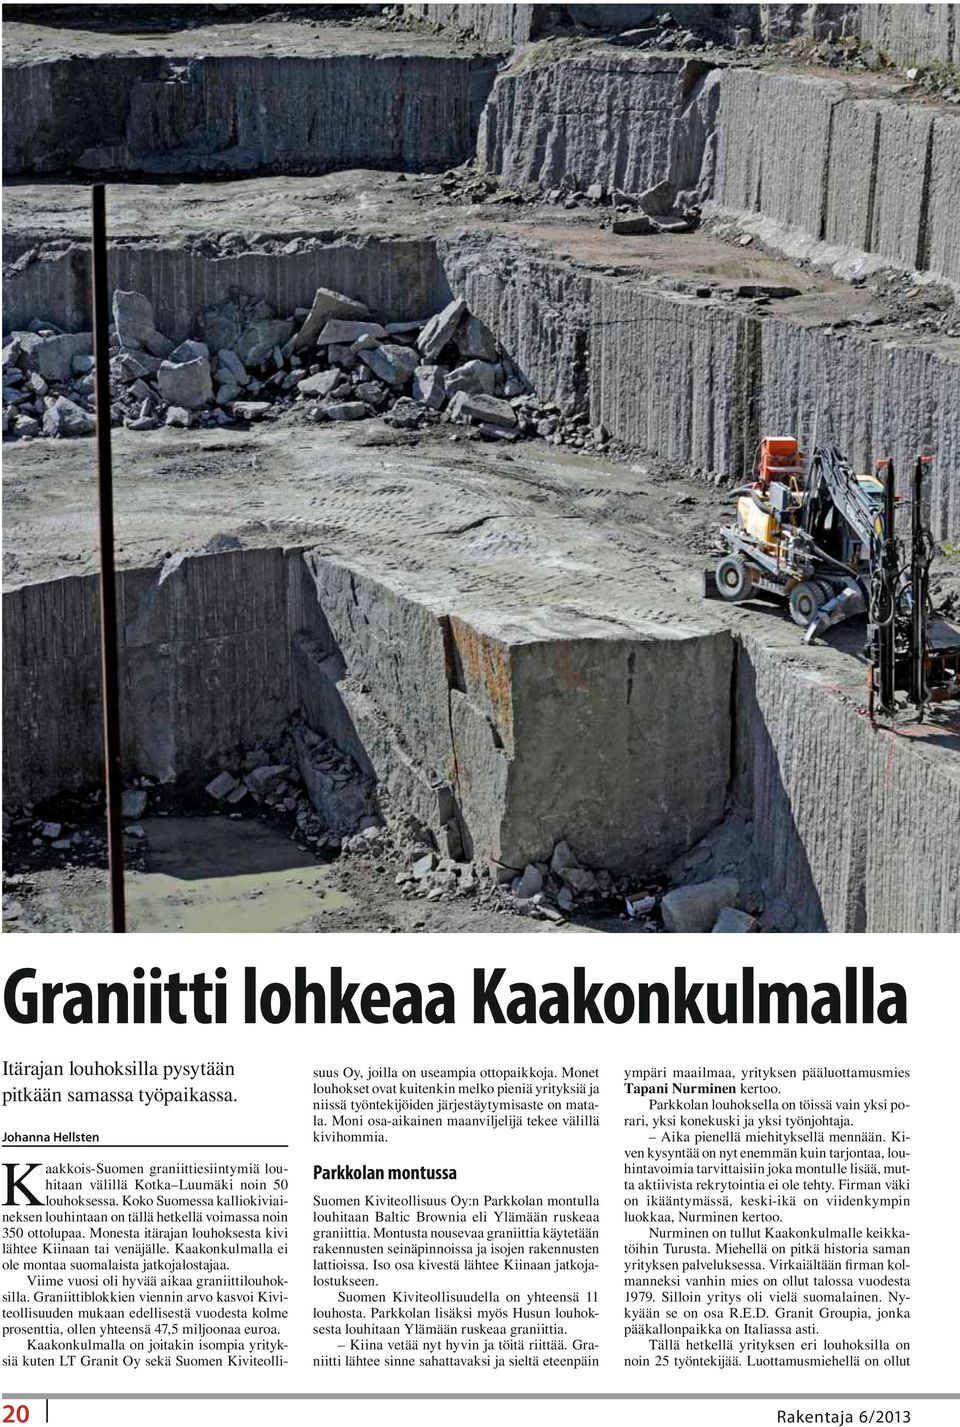 Kaakonkulmalla ei ole montaa suomalaista jatkojalostajaa. Viime vuosi oli hyvää aikaa graniittilouhoksilla.